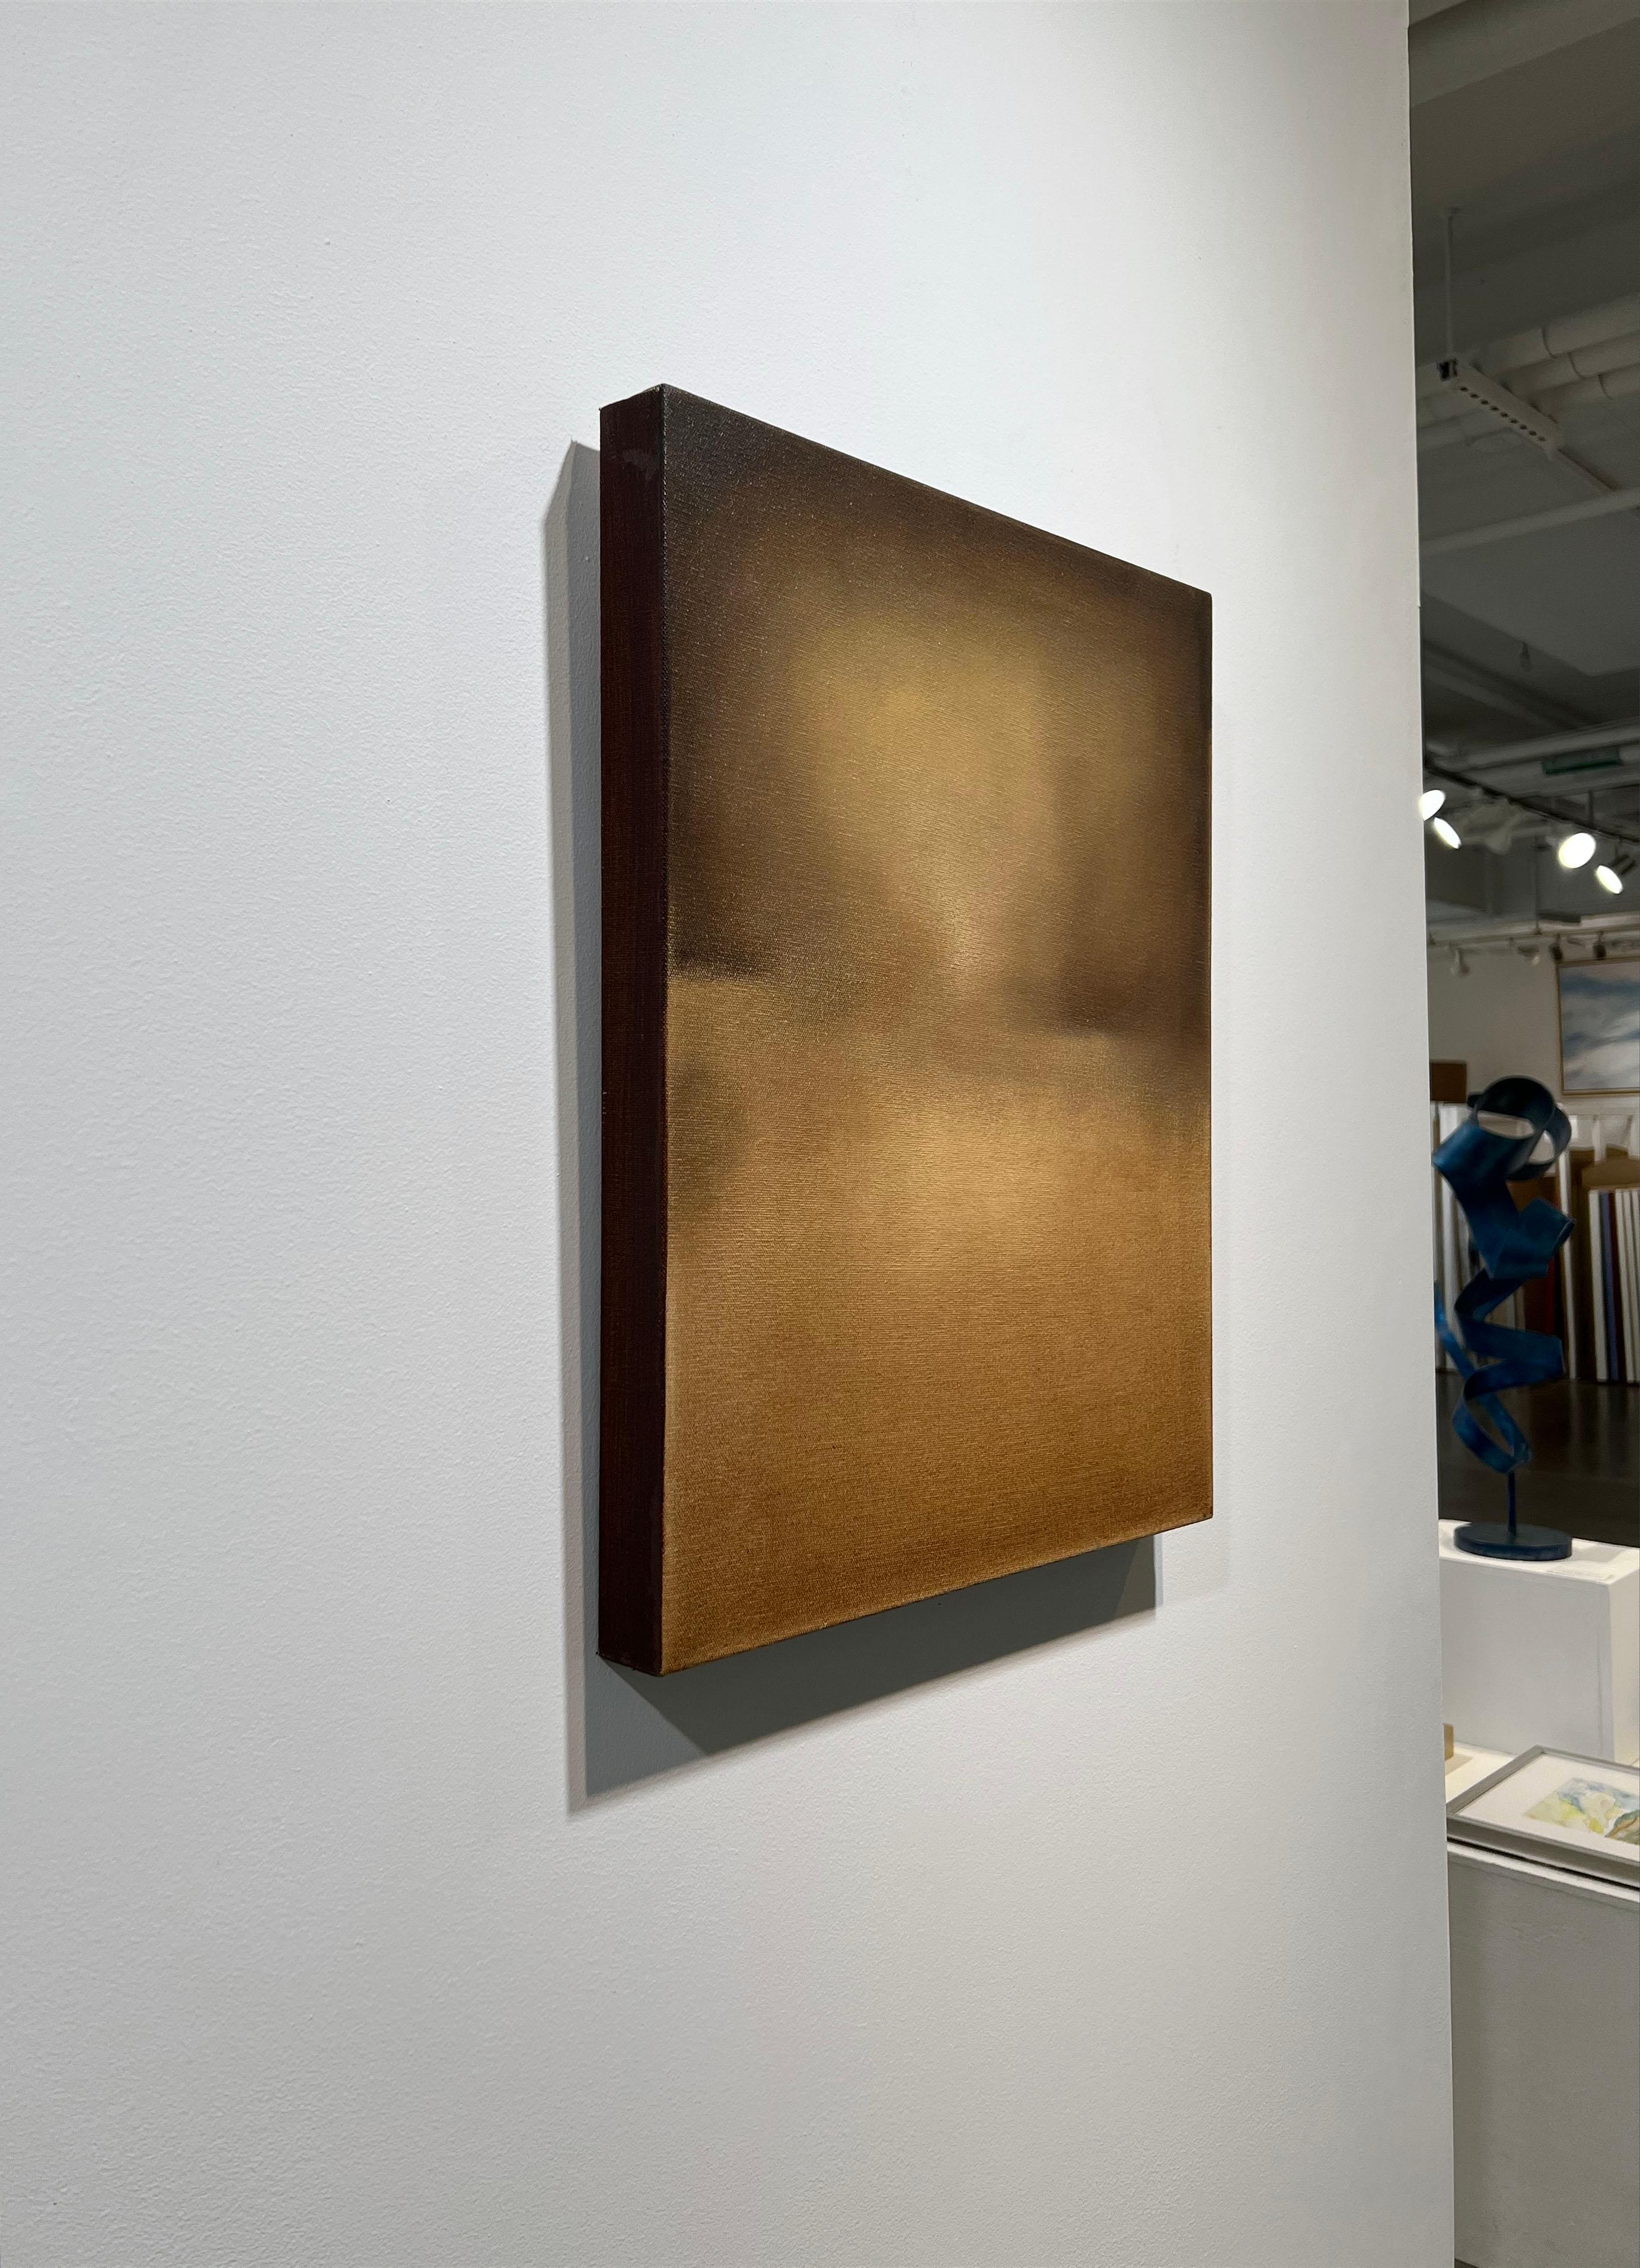 Cette peinture abstraite de Tony Iadicicco est réalisée avec de la peinture à l'huile sur toile. Il présente une palette de terre d'ombre chaude avec des couleurs douces et mélangées formant une composition abstraite avec une vague ligne d'horizon.